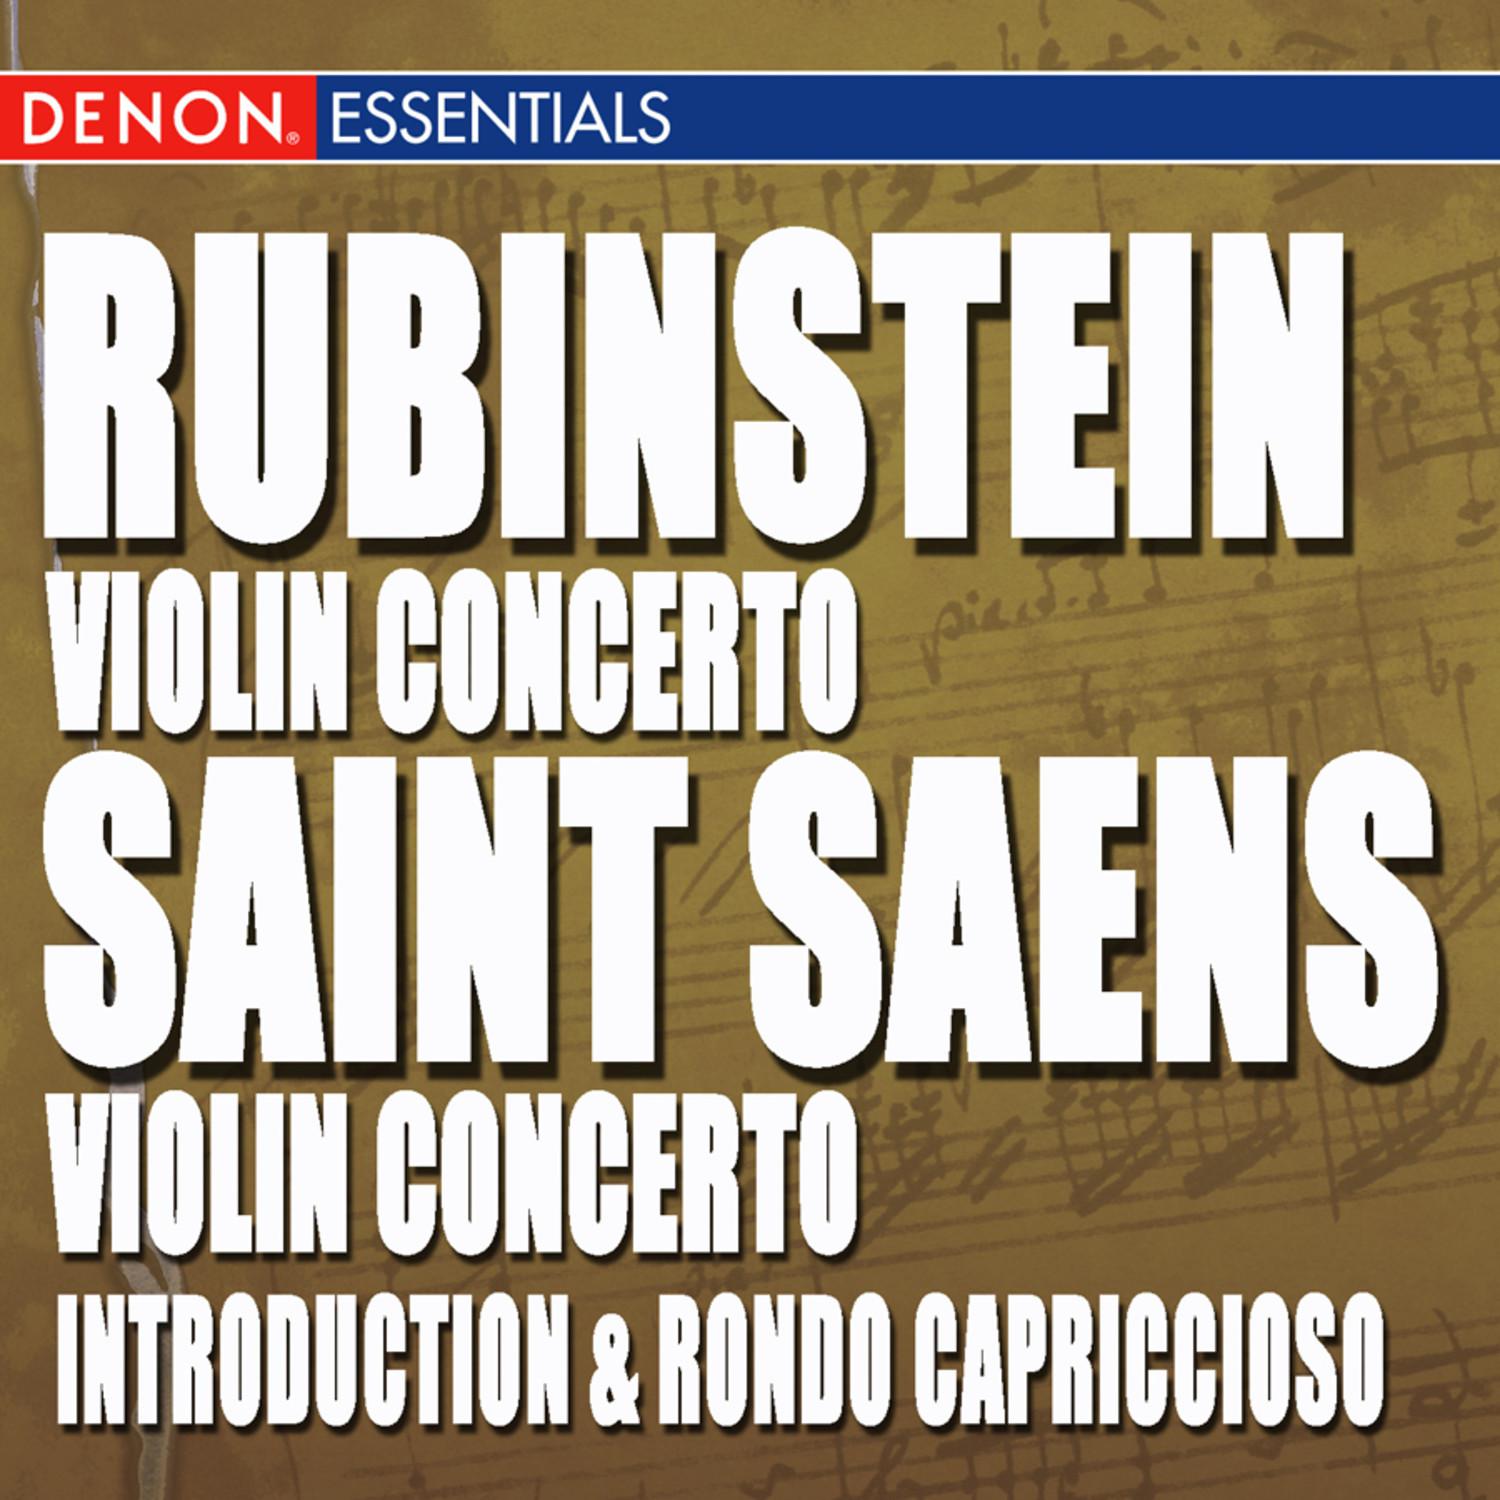 "Concerto for Violin & Orchestra No. 3 in G minor, Op. 61: I. Allegro non troppo